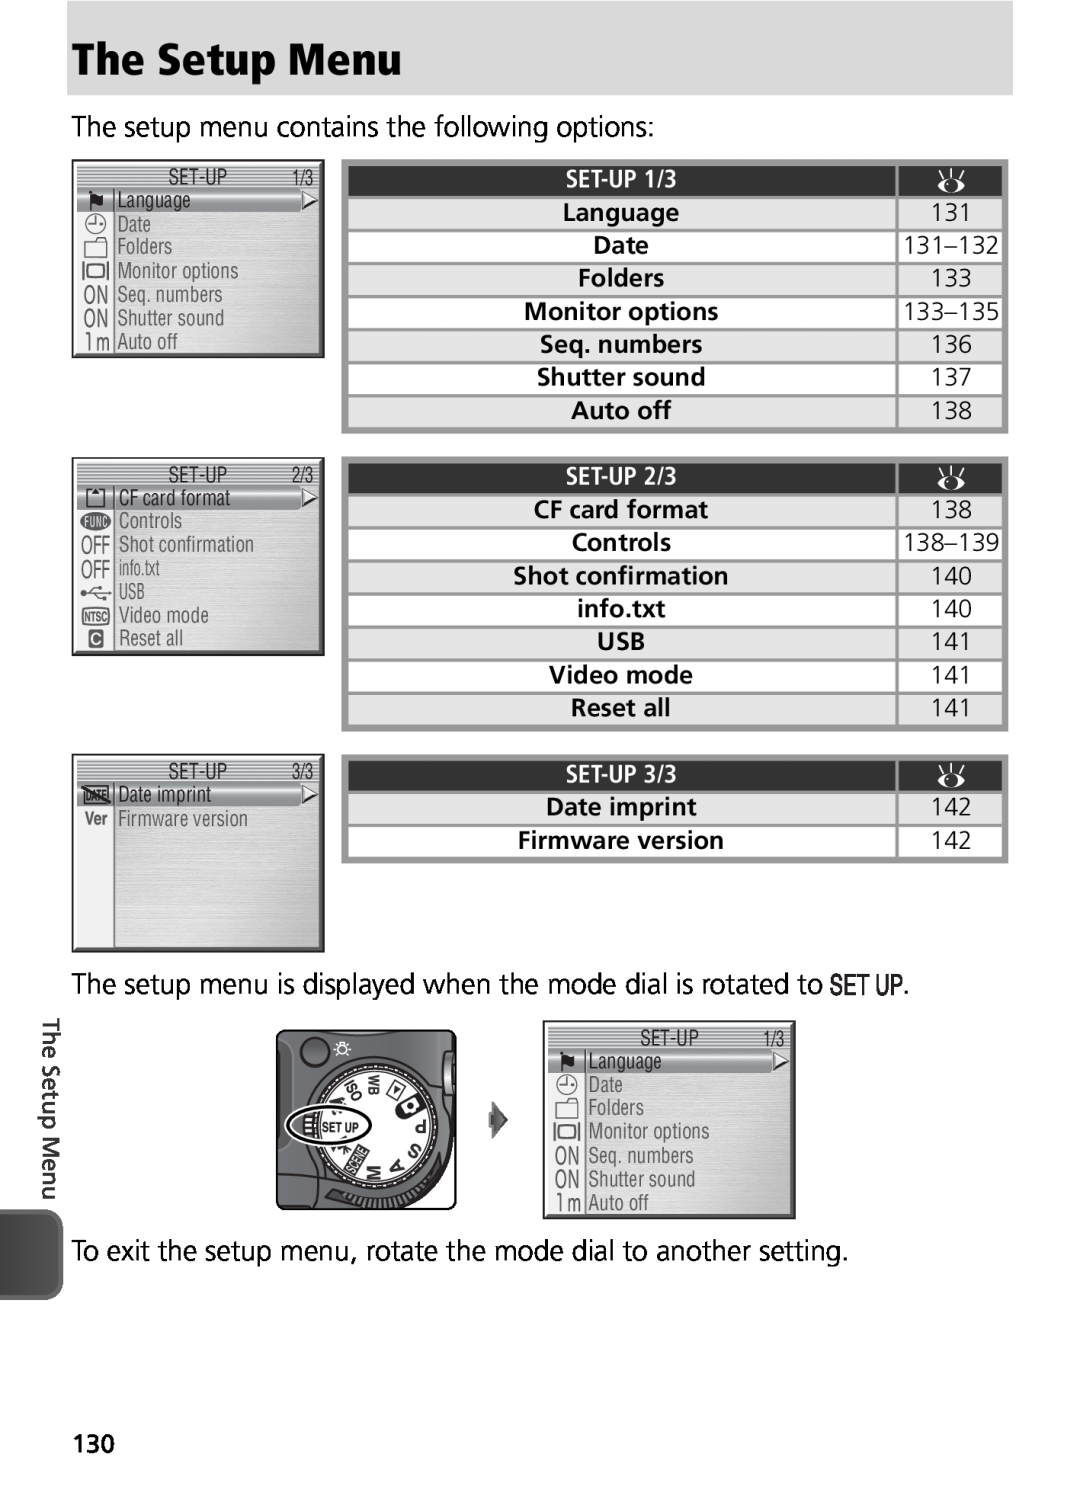 Nikon COOLPIX8800 manual The Setup Menu, The setup menu contains the following options, Date 